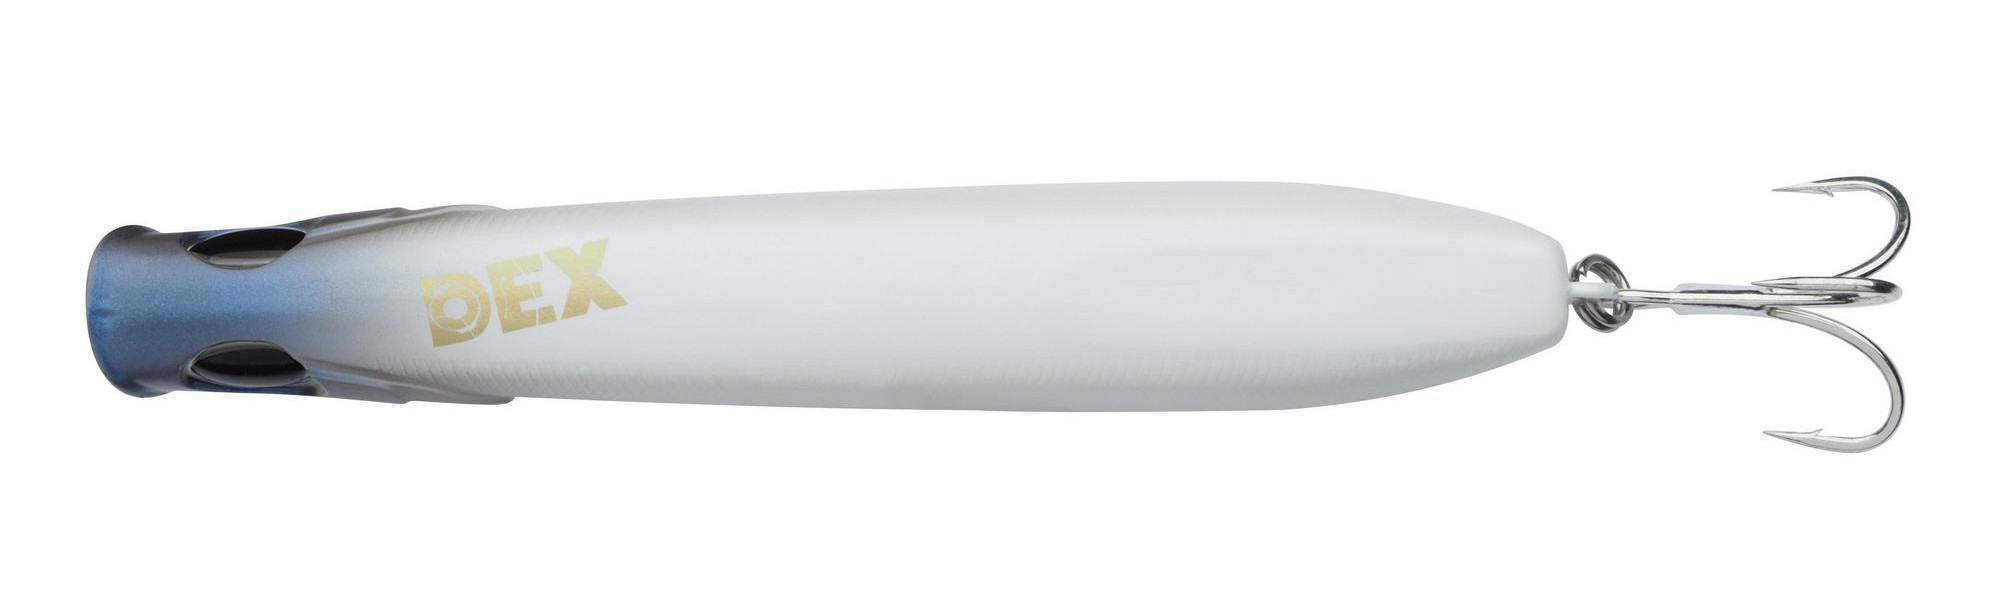 Berkley Dex Strider Surface Lure 12cm (20g)